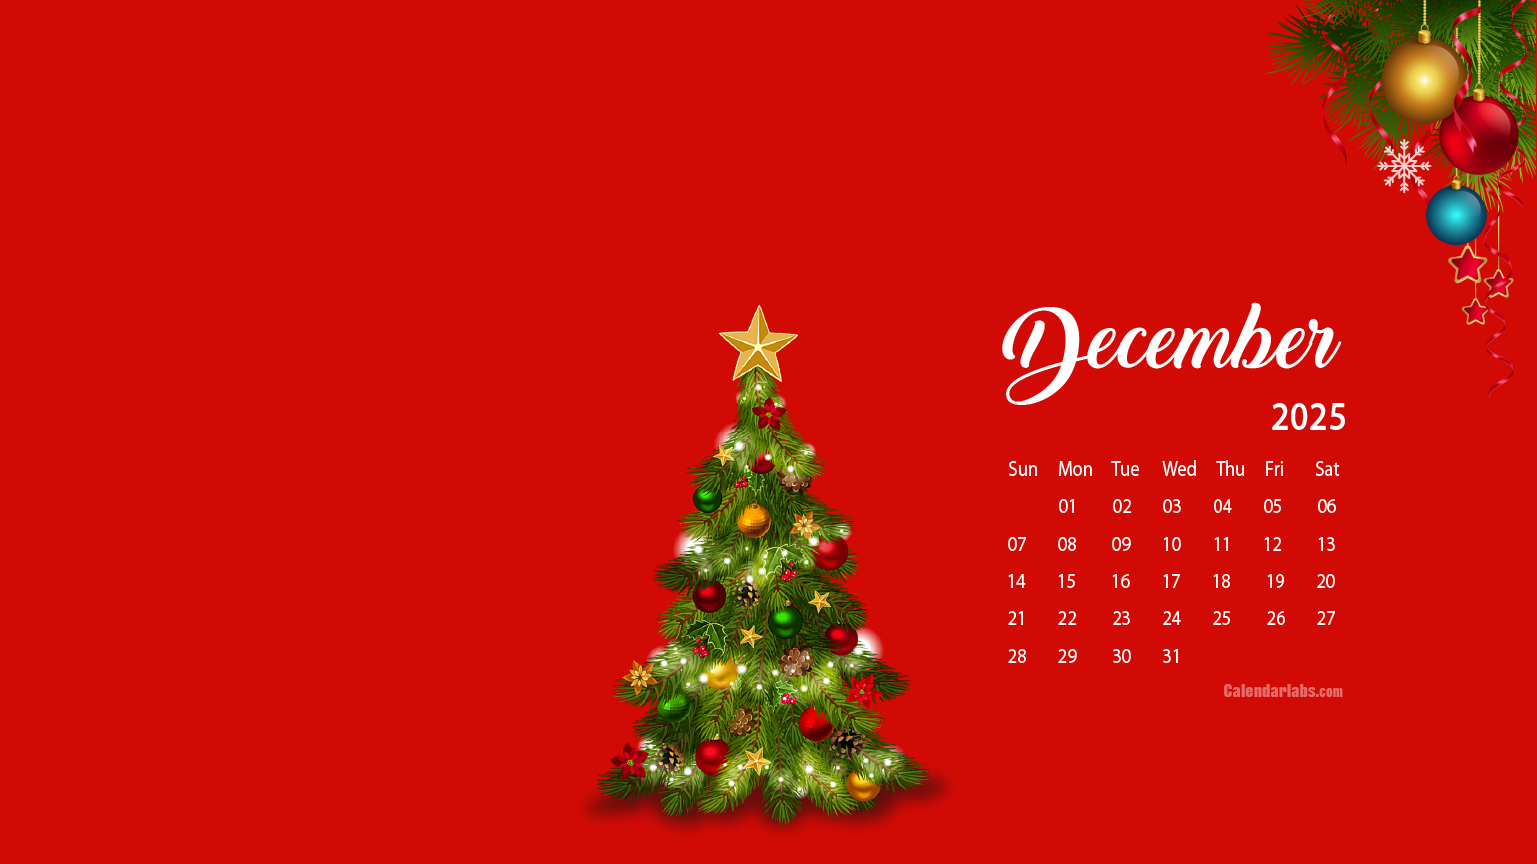 December 2025 Desktop Wallpaper Calendar CalendarLabs